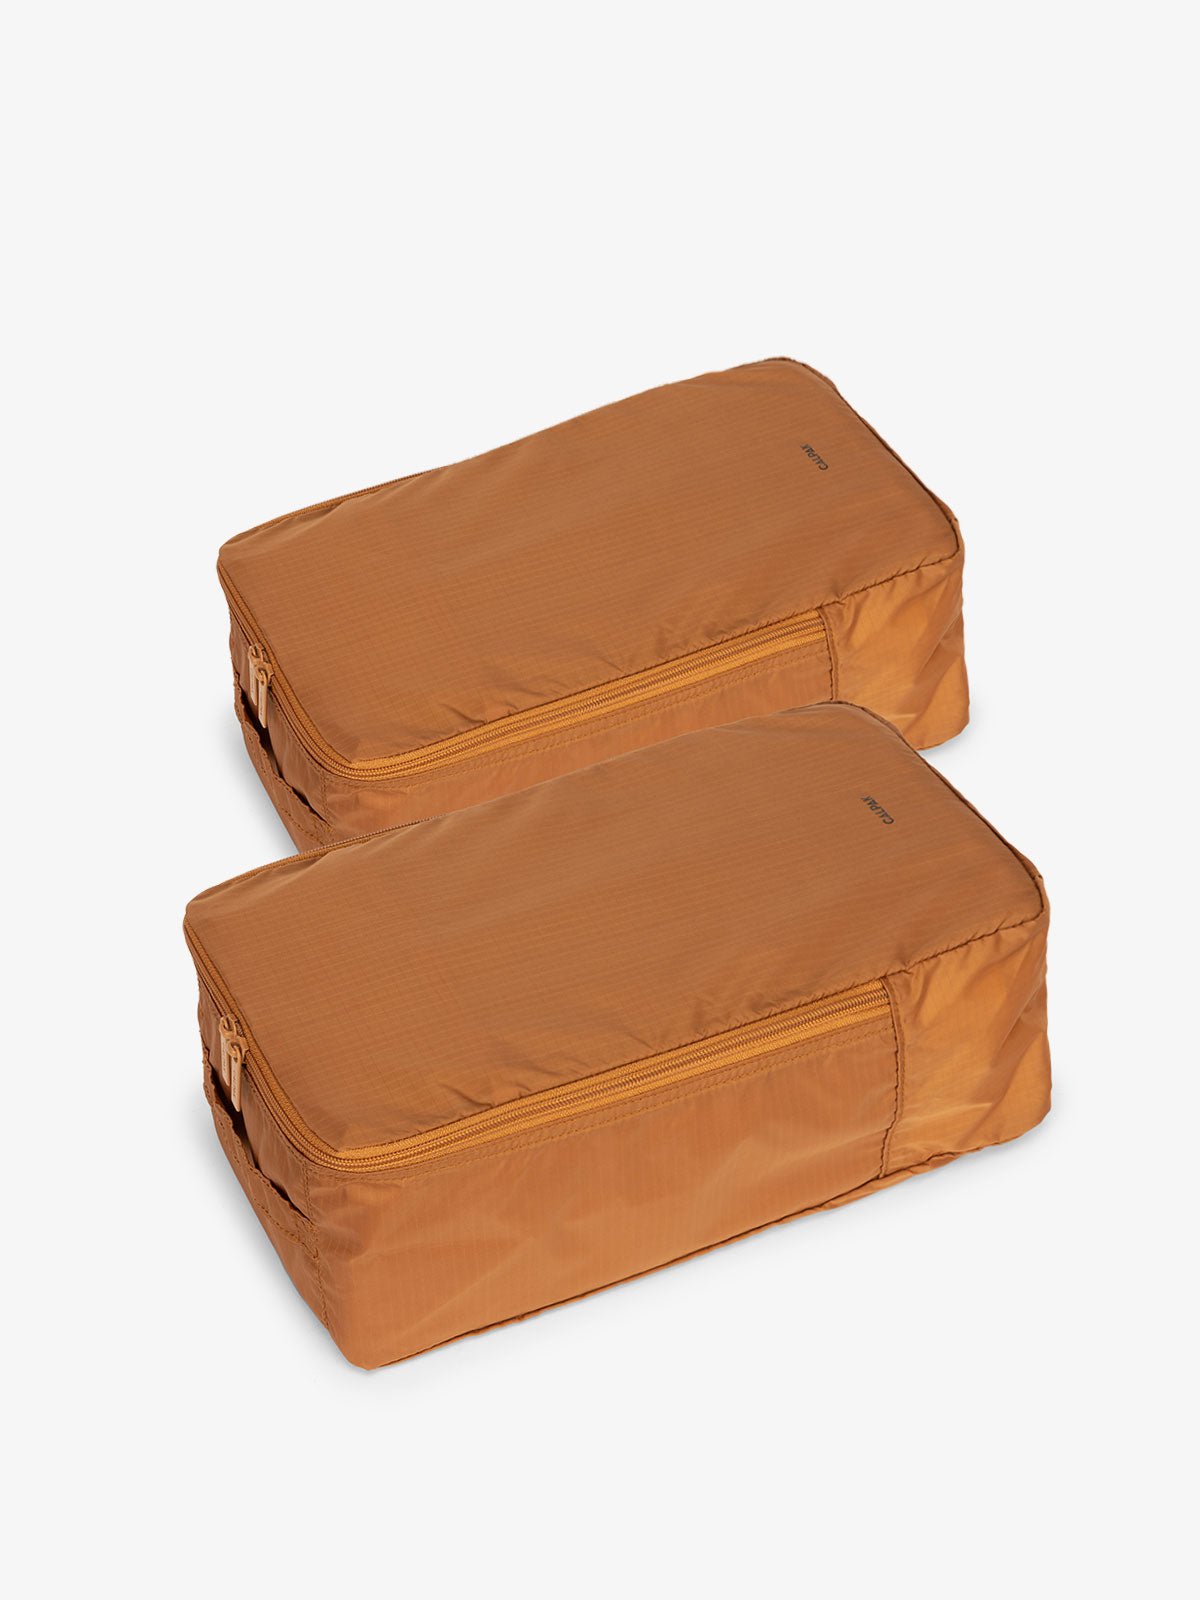 CALPAK Compakt shoe bag set in camel